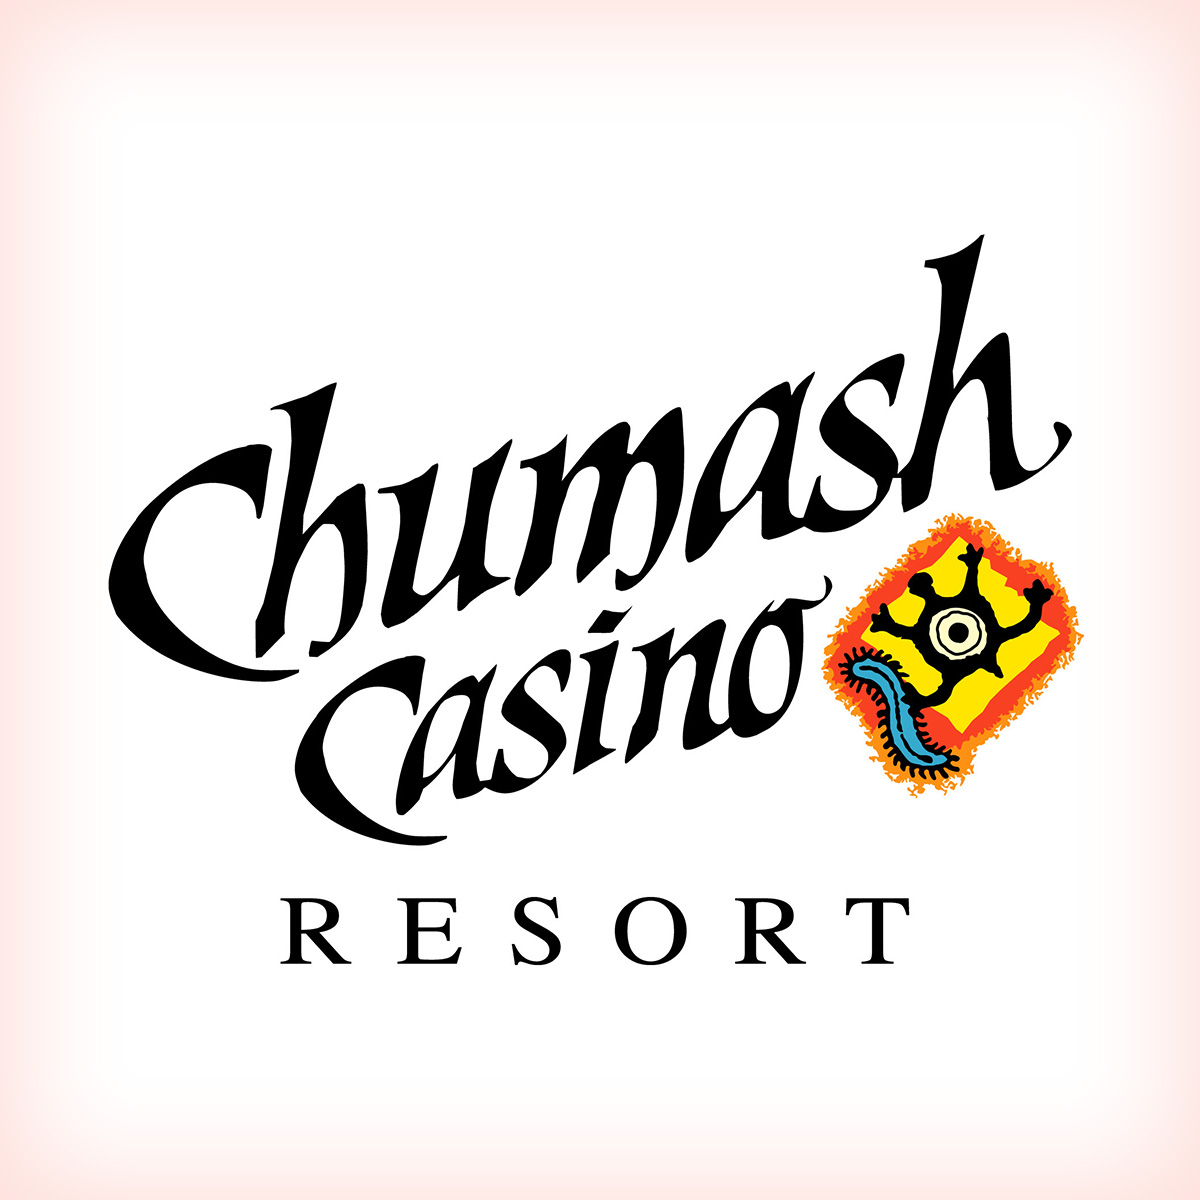 chumash casino resort pet friendry